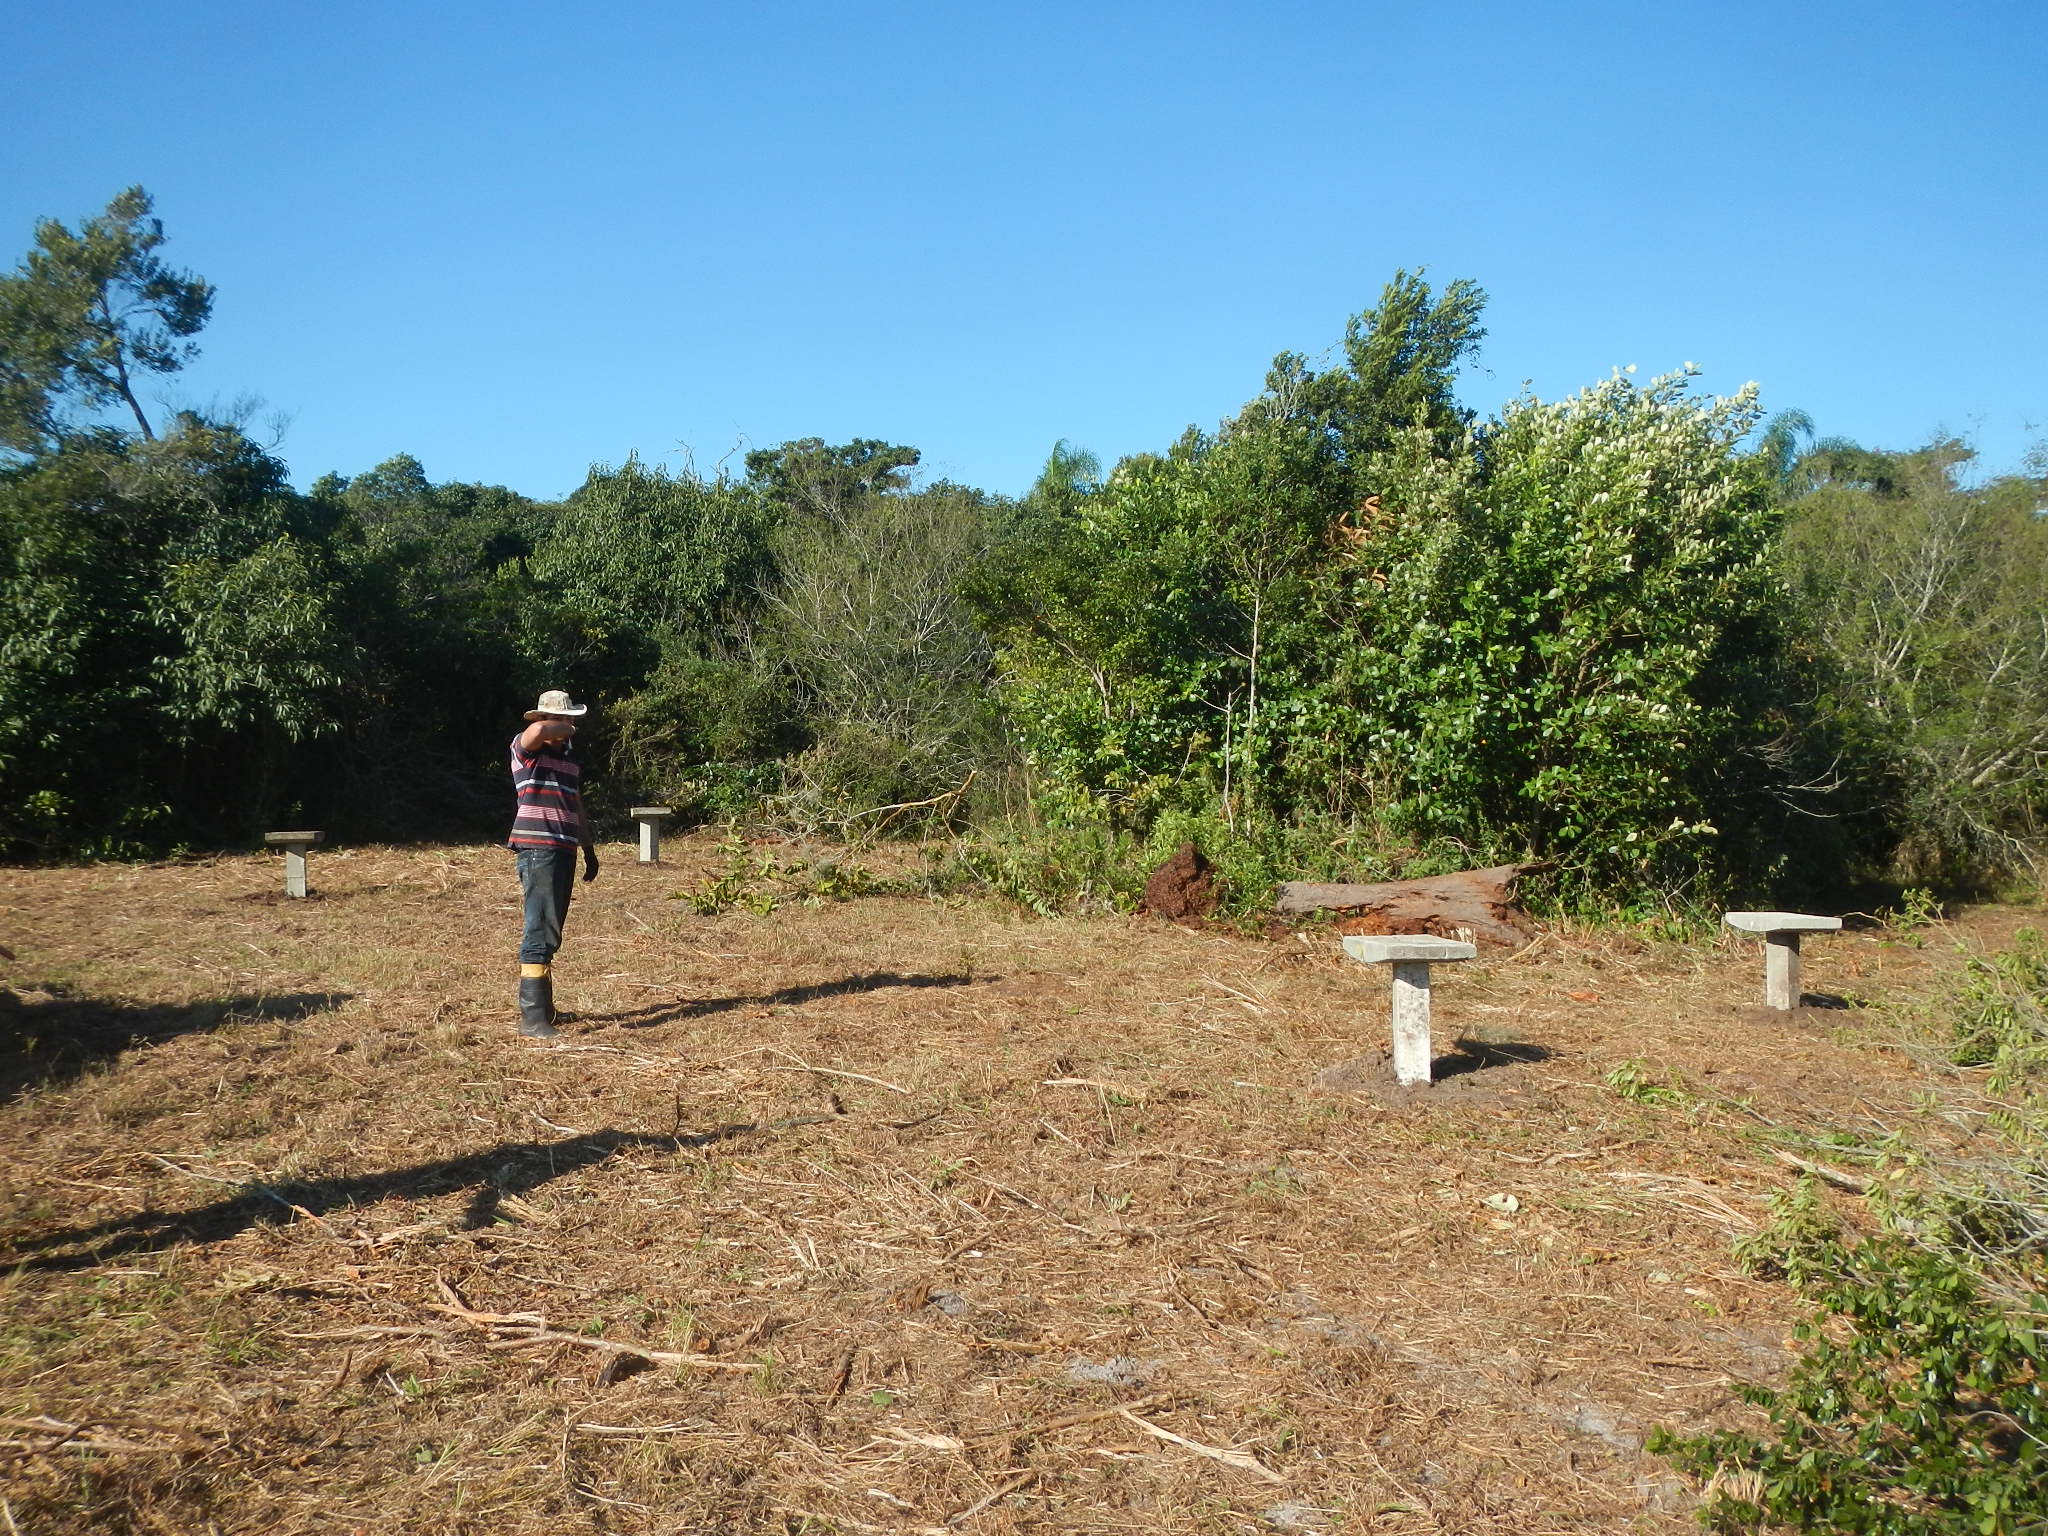 20150703 Fazenda apicultura preparo área nova colocação bases 001.jpg